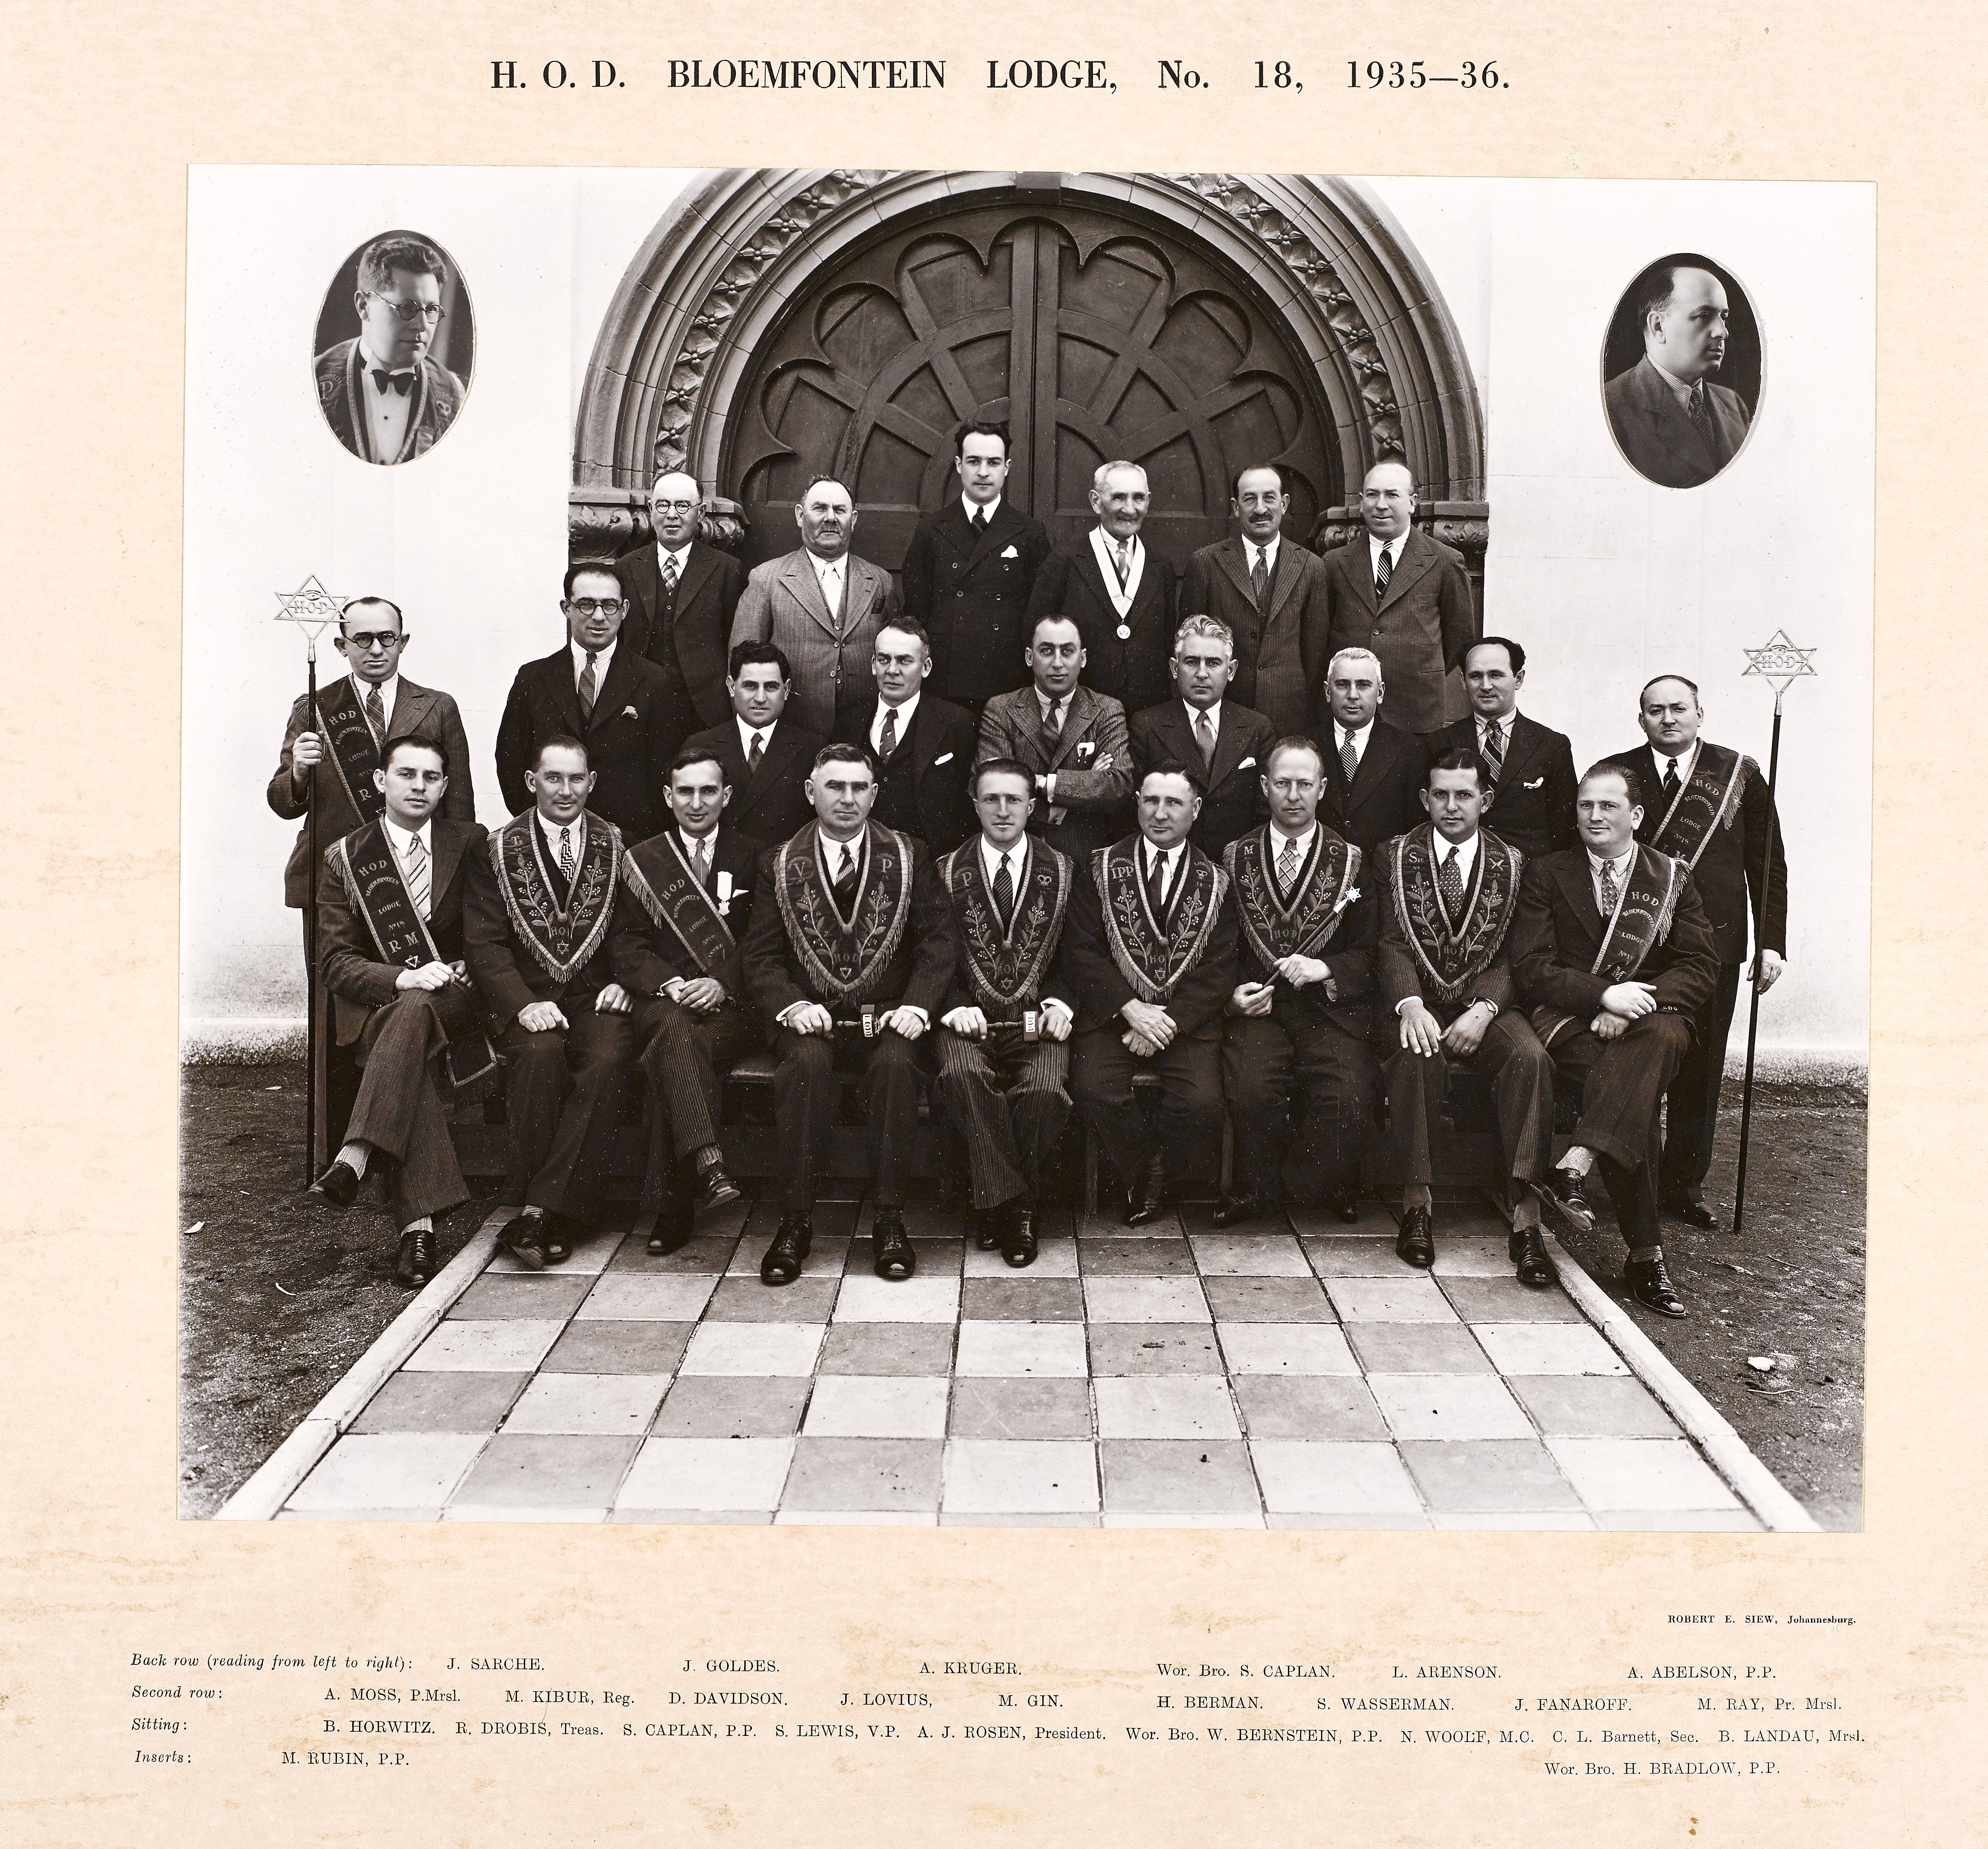 Bloemfontein Lodge 1935 to 1936